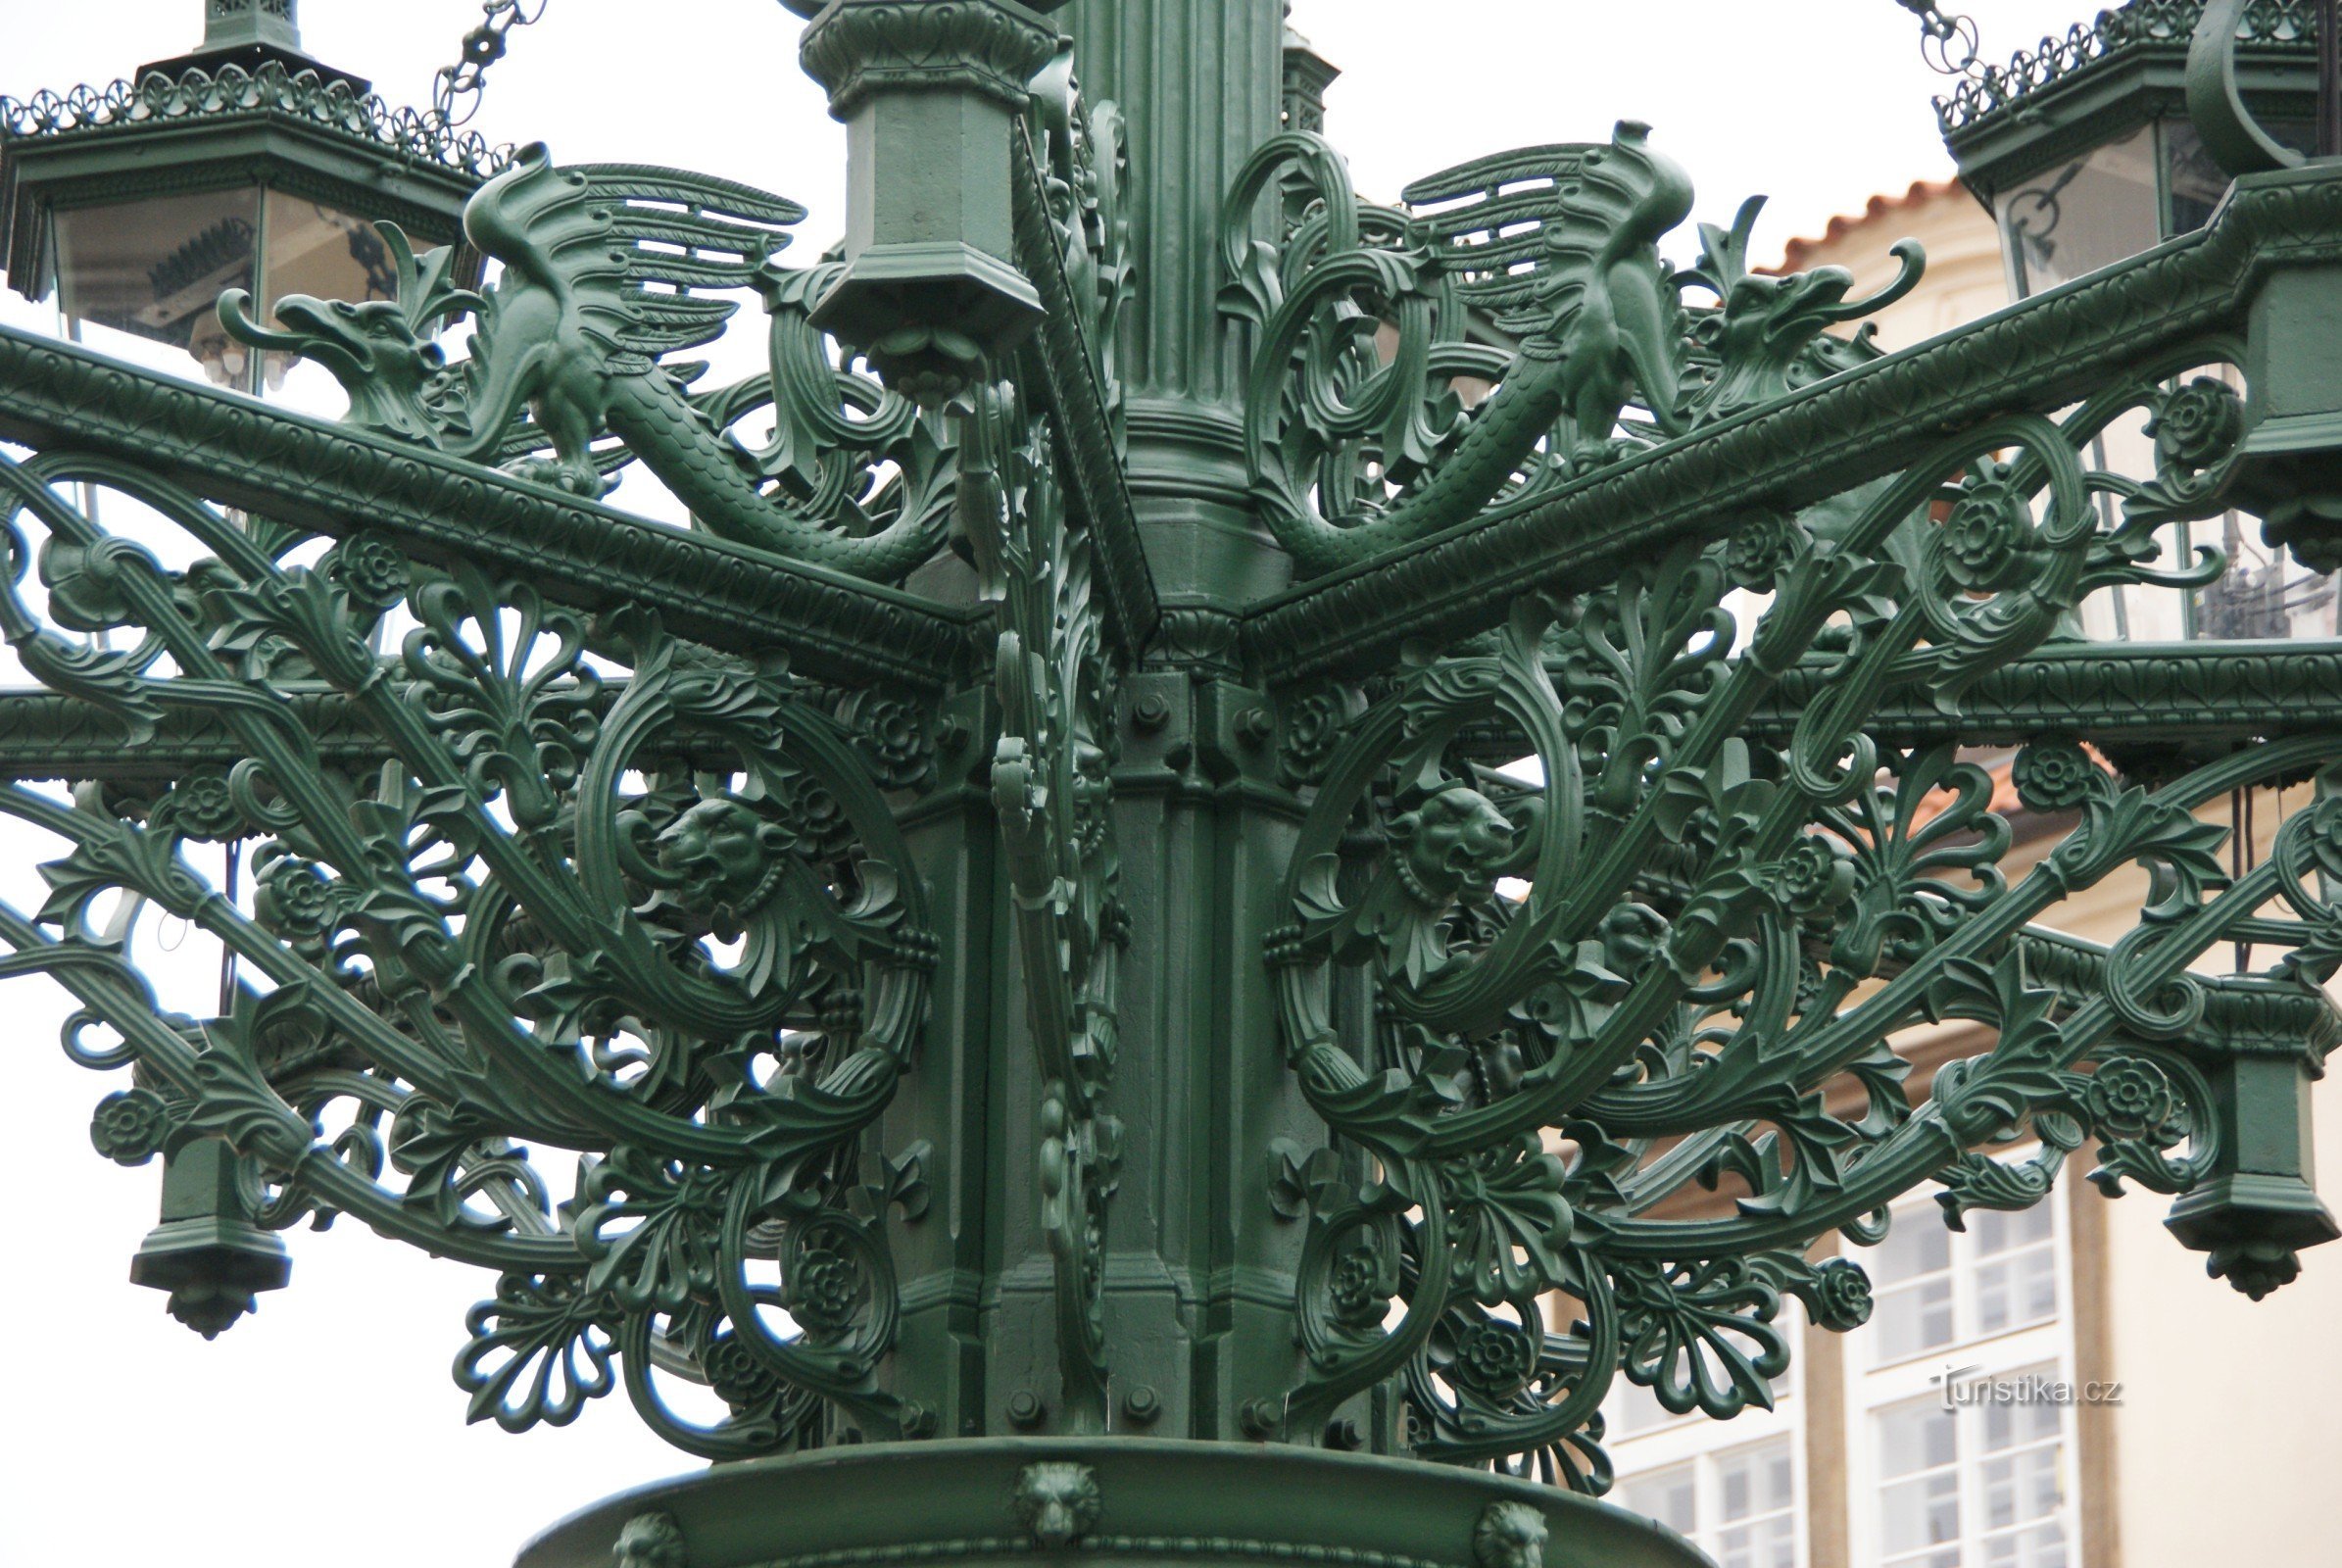 プラハ - フラッチャニ - ロレタンスケー通りの歴史的な街灯